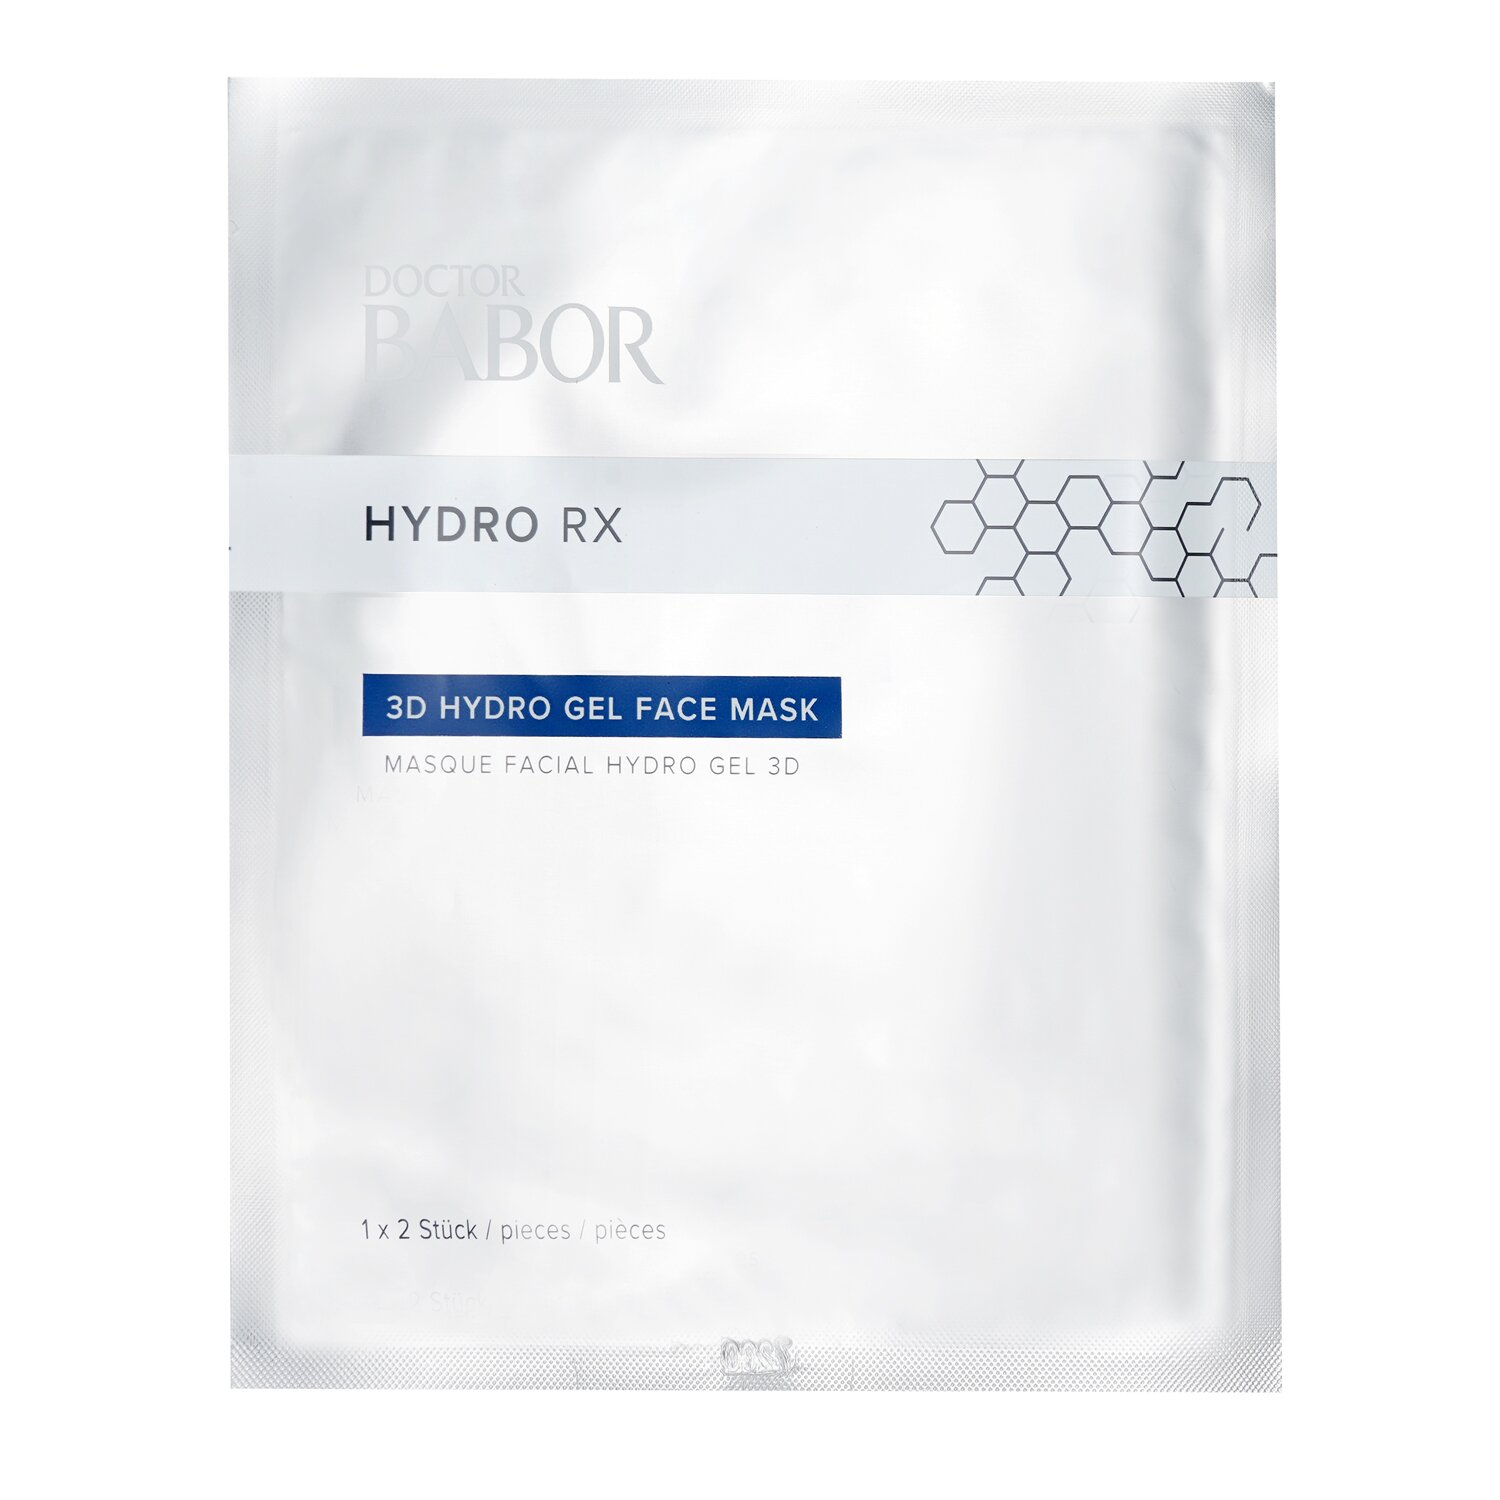 Babor Doctor Babor Hydro RX 3D Hydro gelová maska na obličej 4pcs